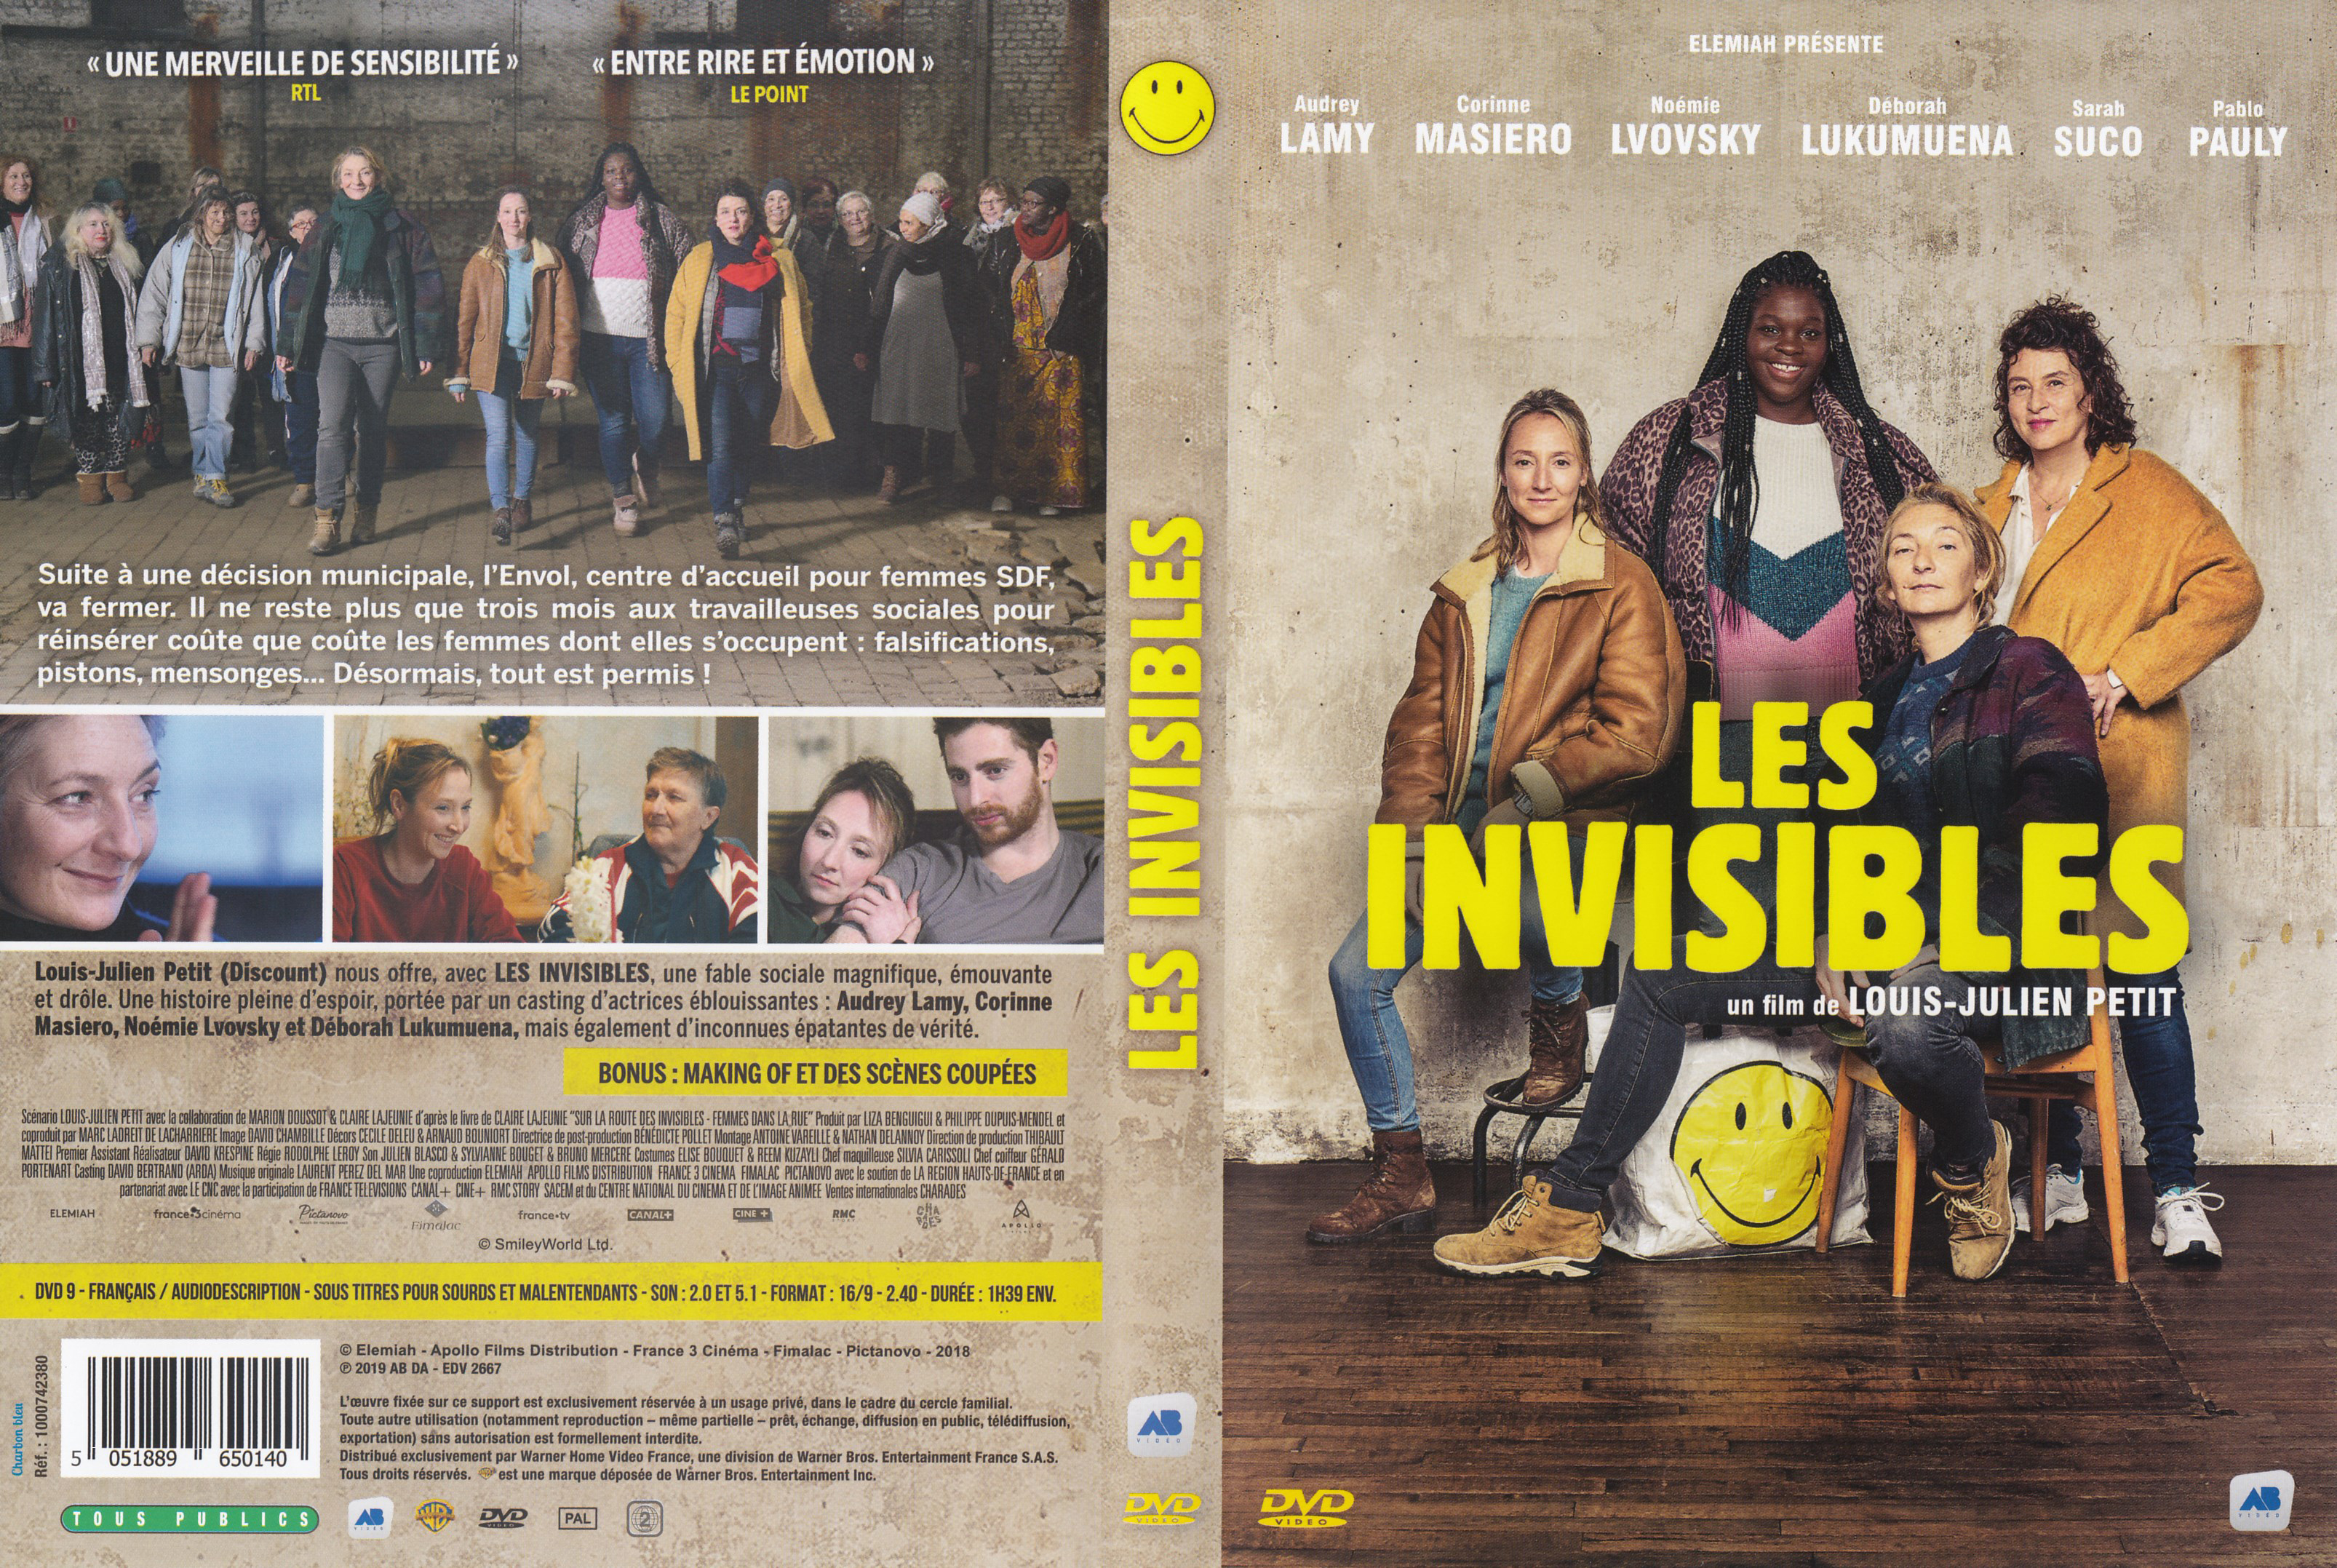 Jaquette DVD Les invisibles